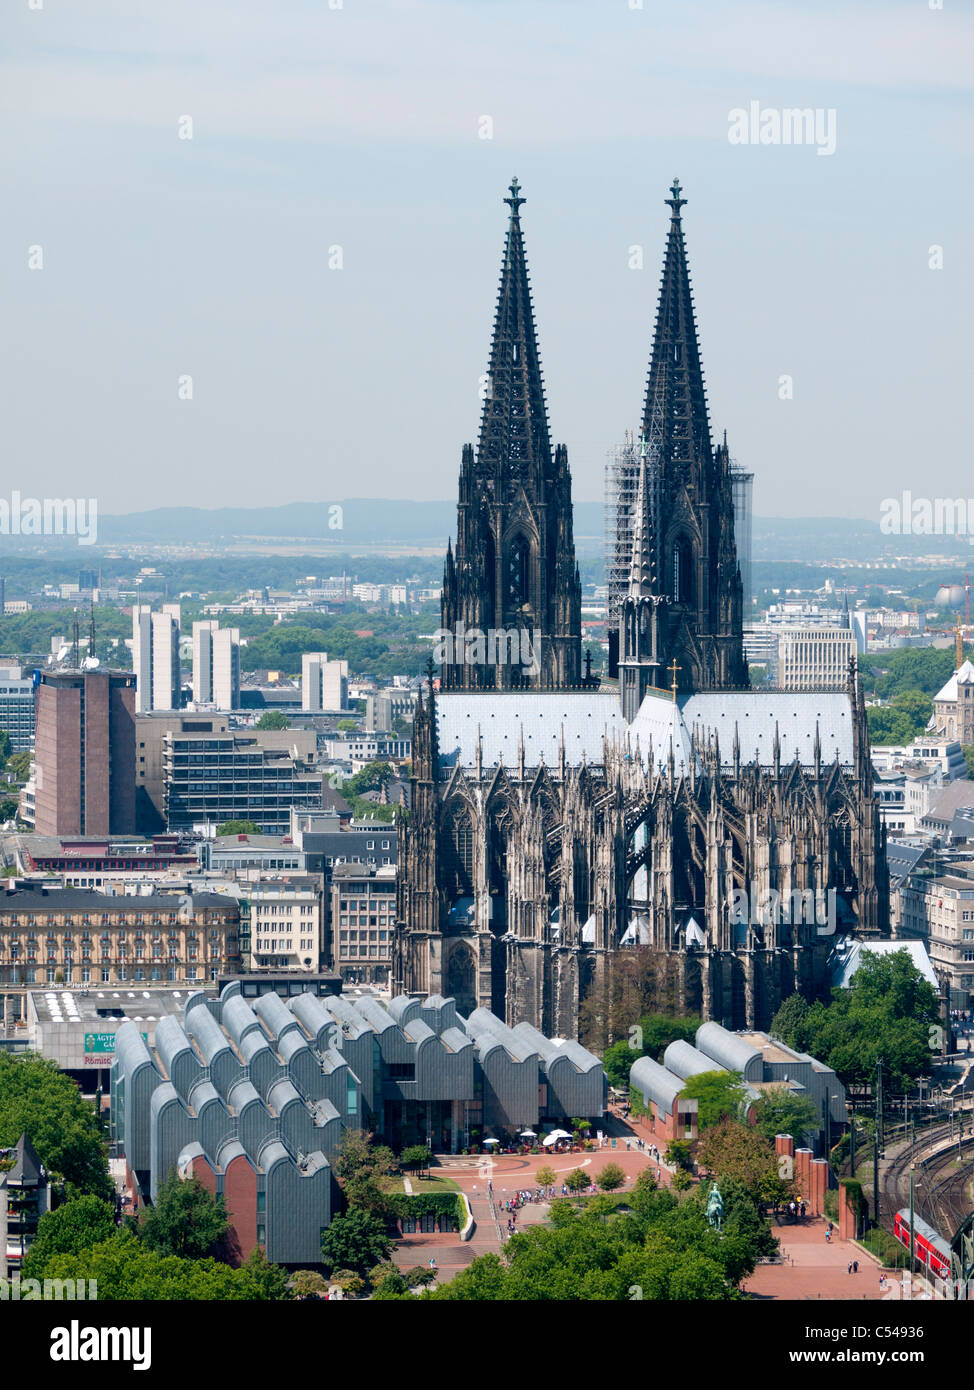 Vue sur la cathédrale de Cologne ou le Dom et musée Ludwig en Allemagne Banque D'Images